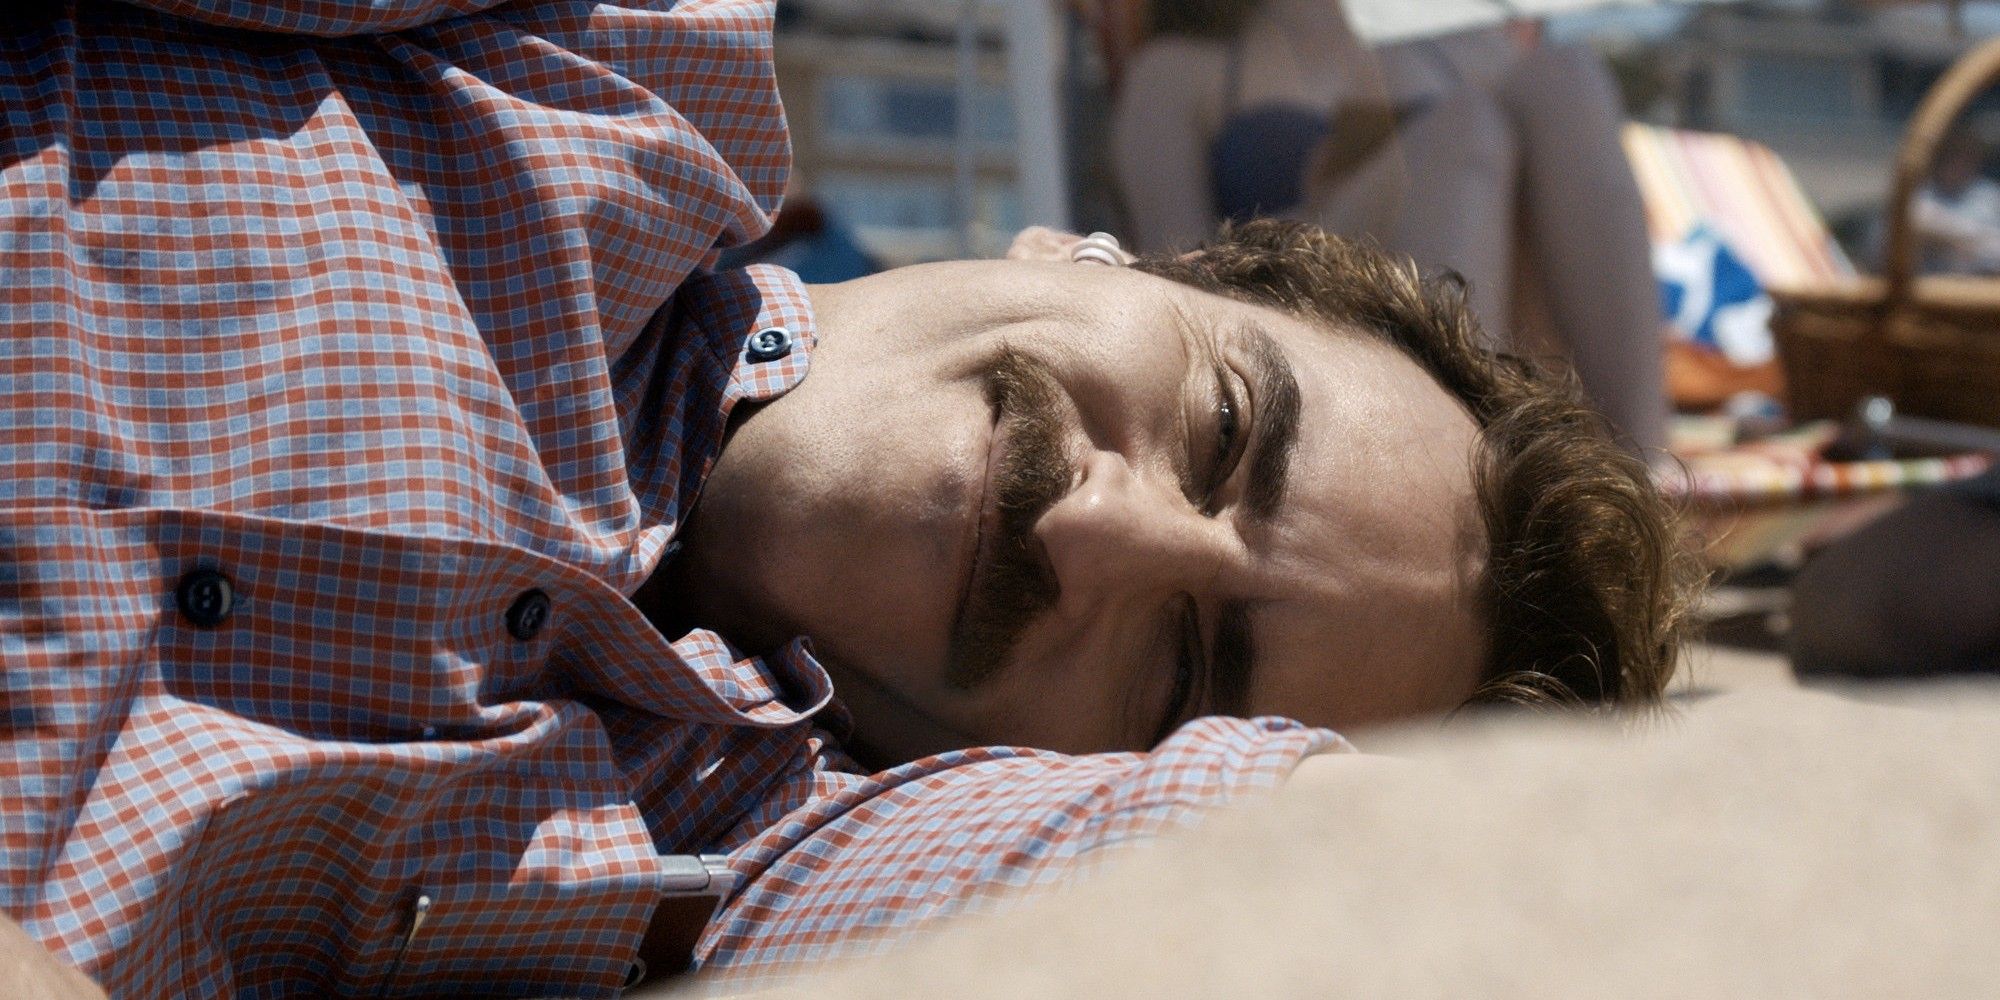 Joaquin Phoenix smiling in 'Her'